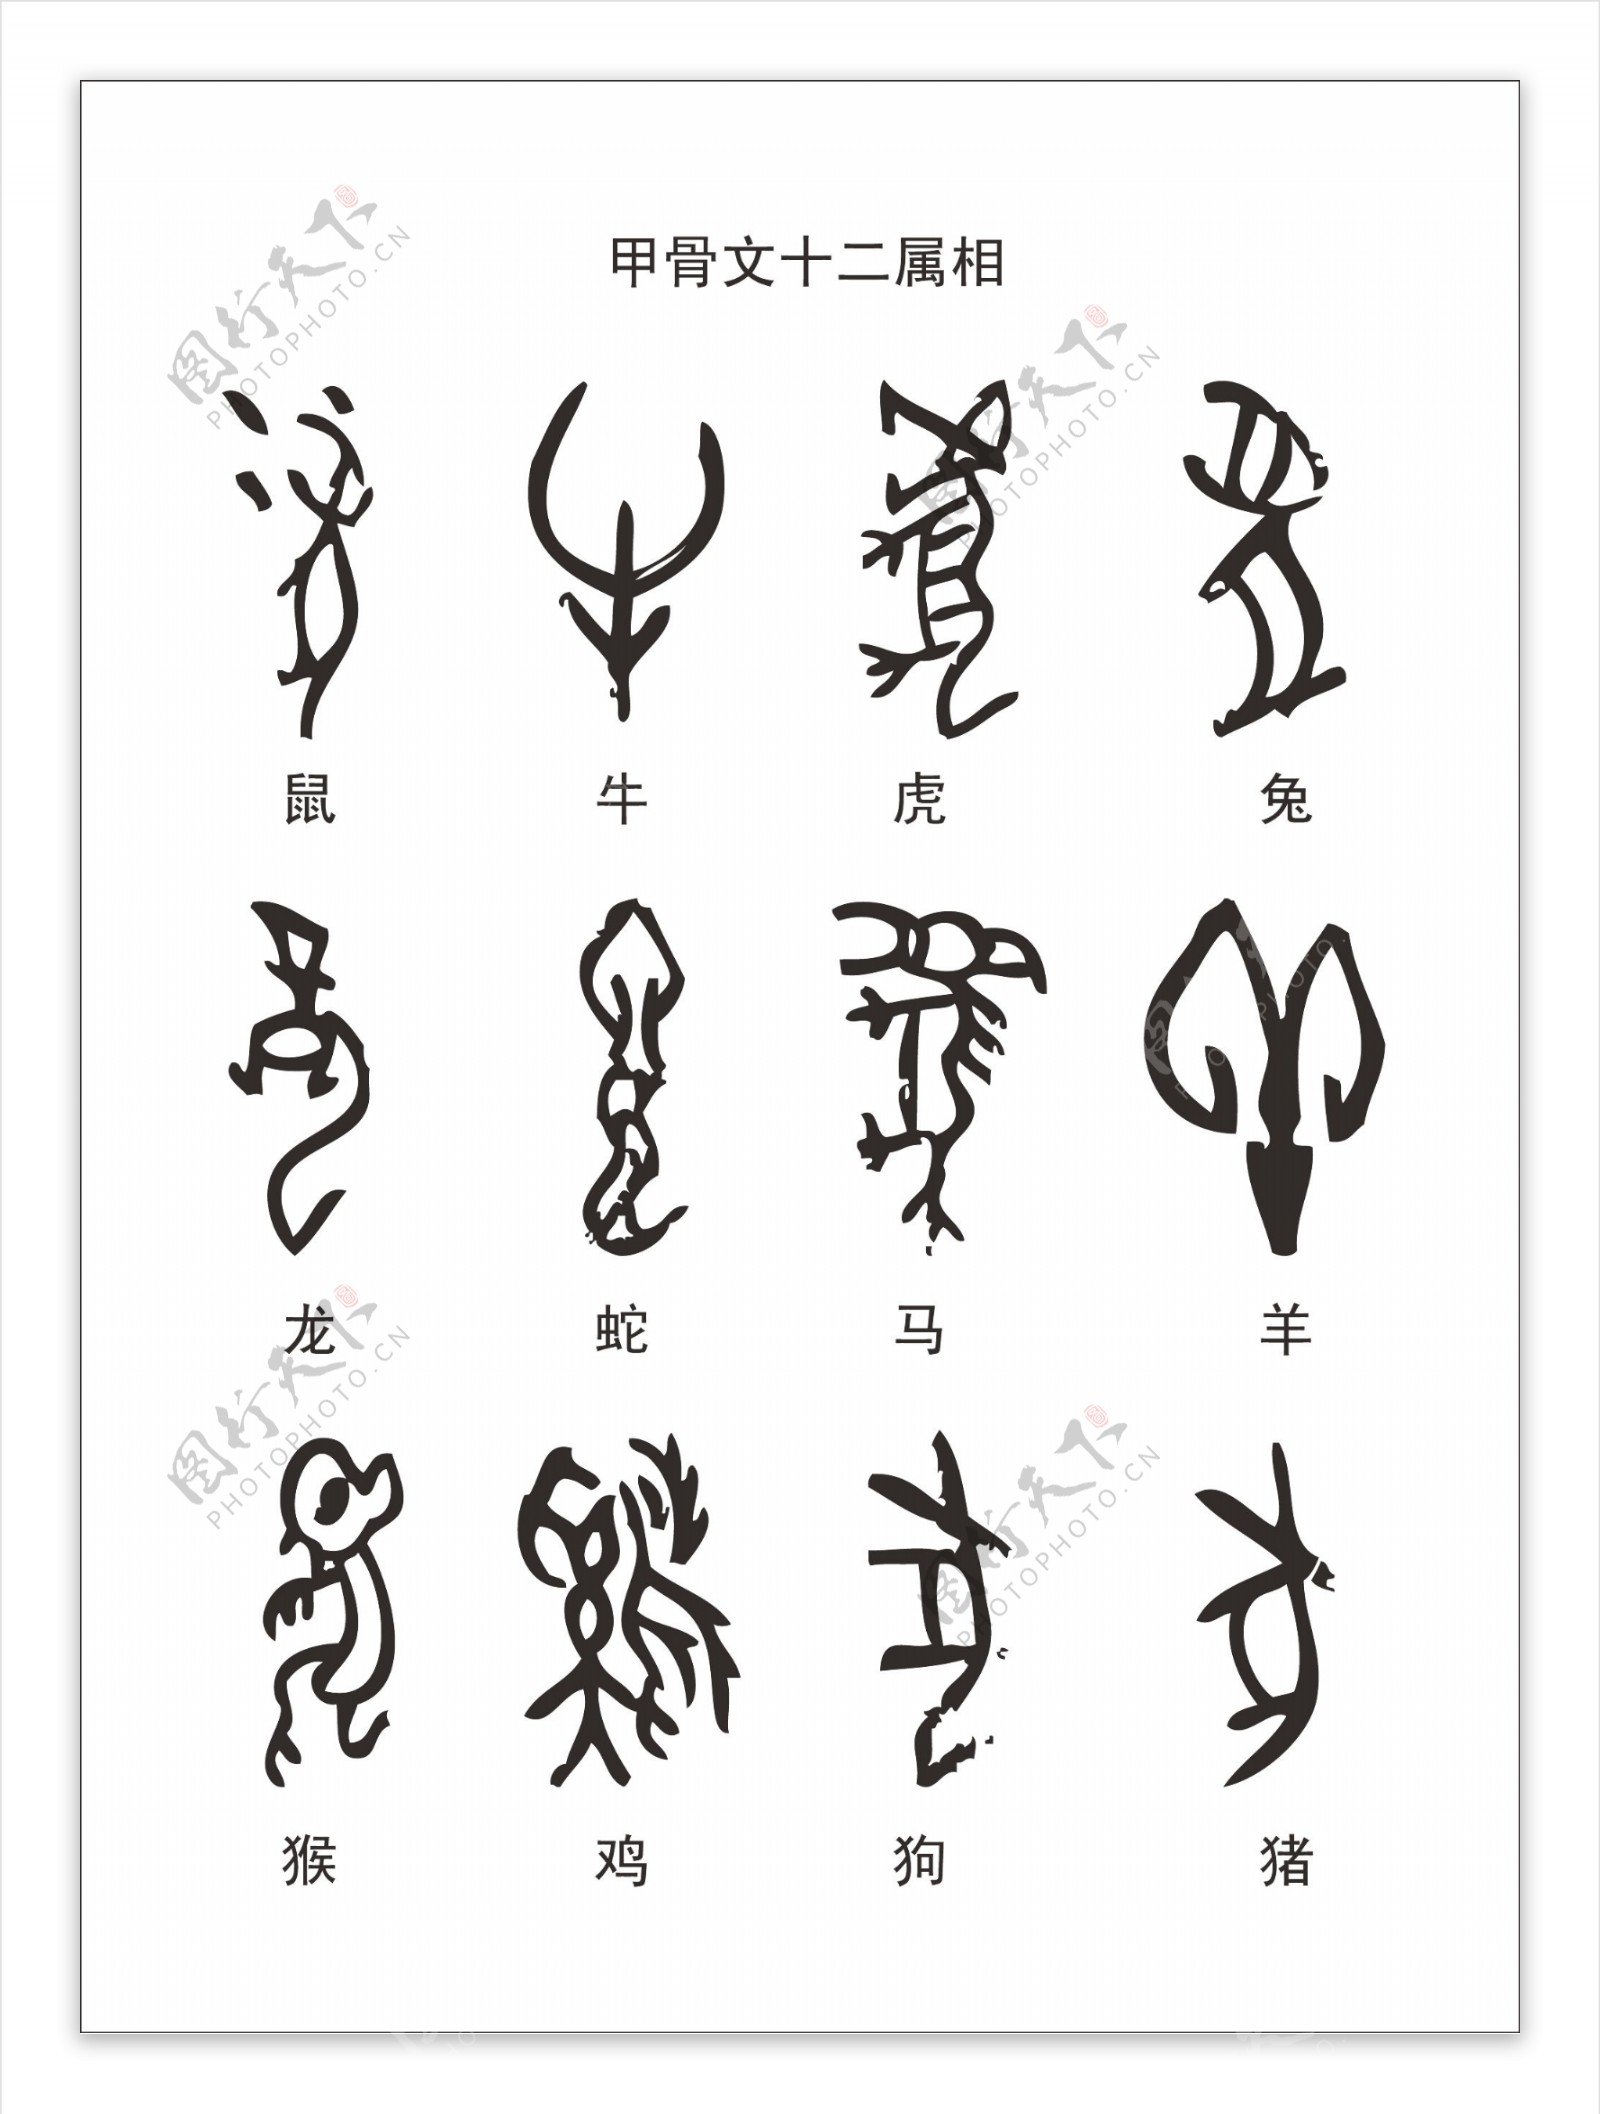 从甲骨文的字形字义变迁，看文化符号背后的类比内涵。从“家”字看汉字的演进，是如何保留甲骨文的符号，而与时俱进的更换文字内涵。 - 知乎